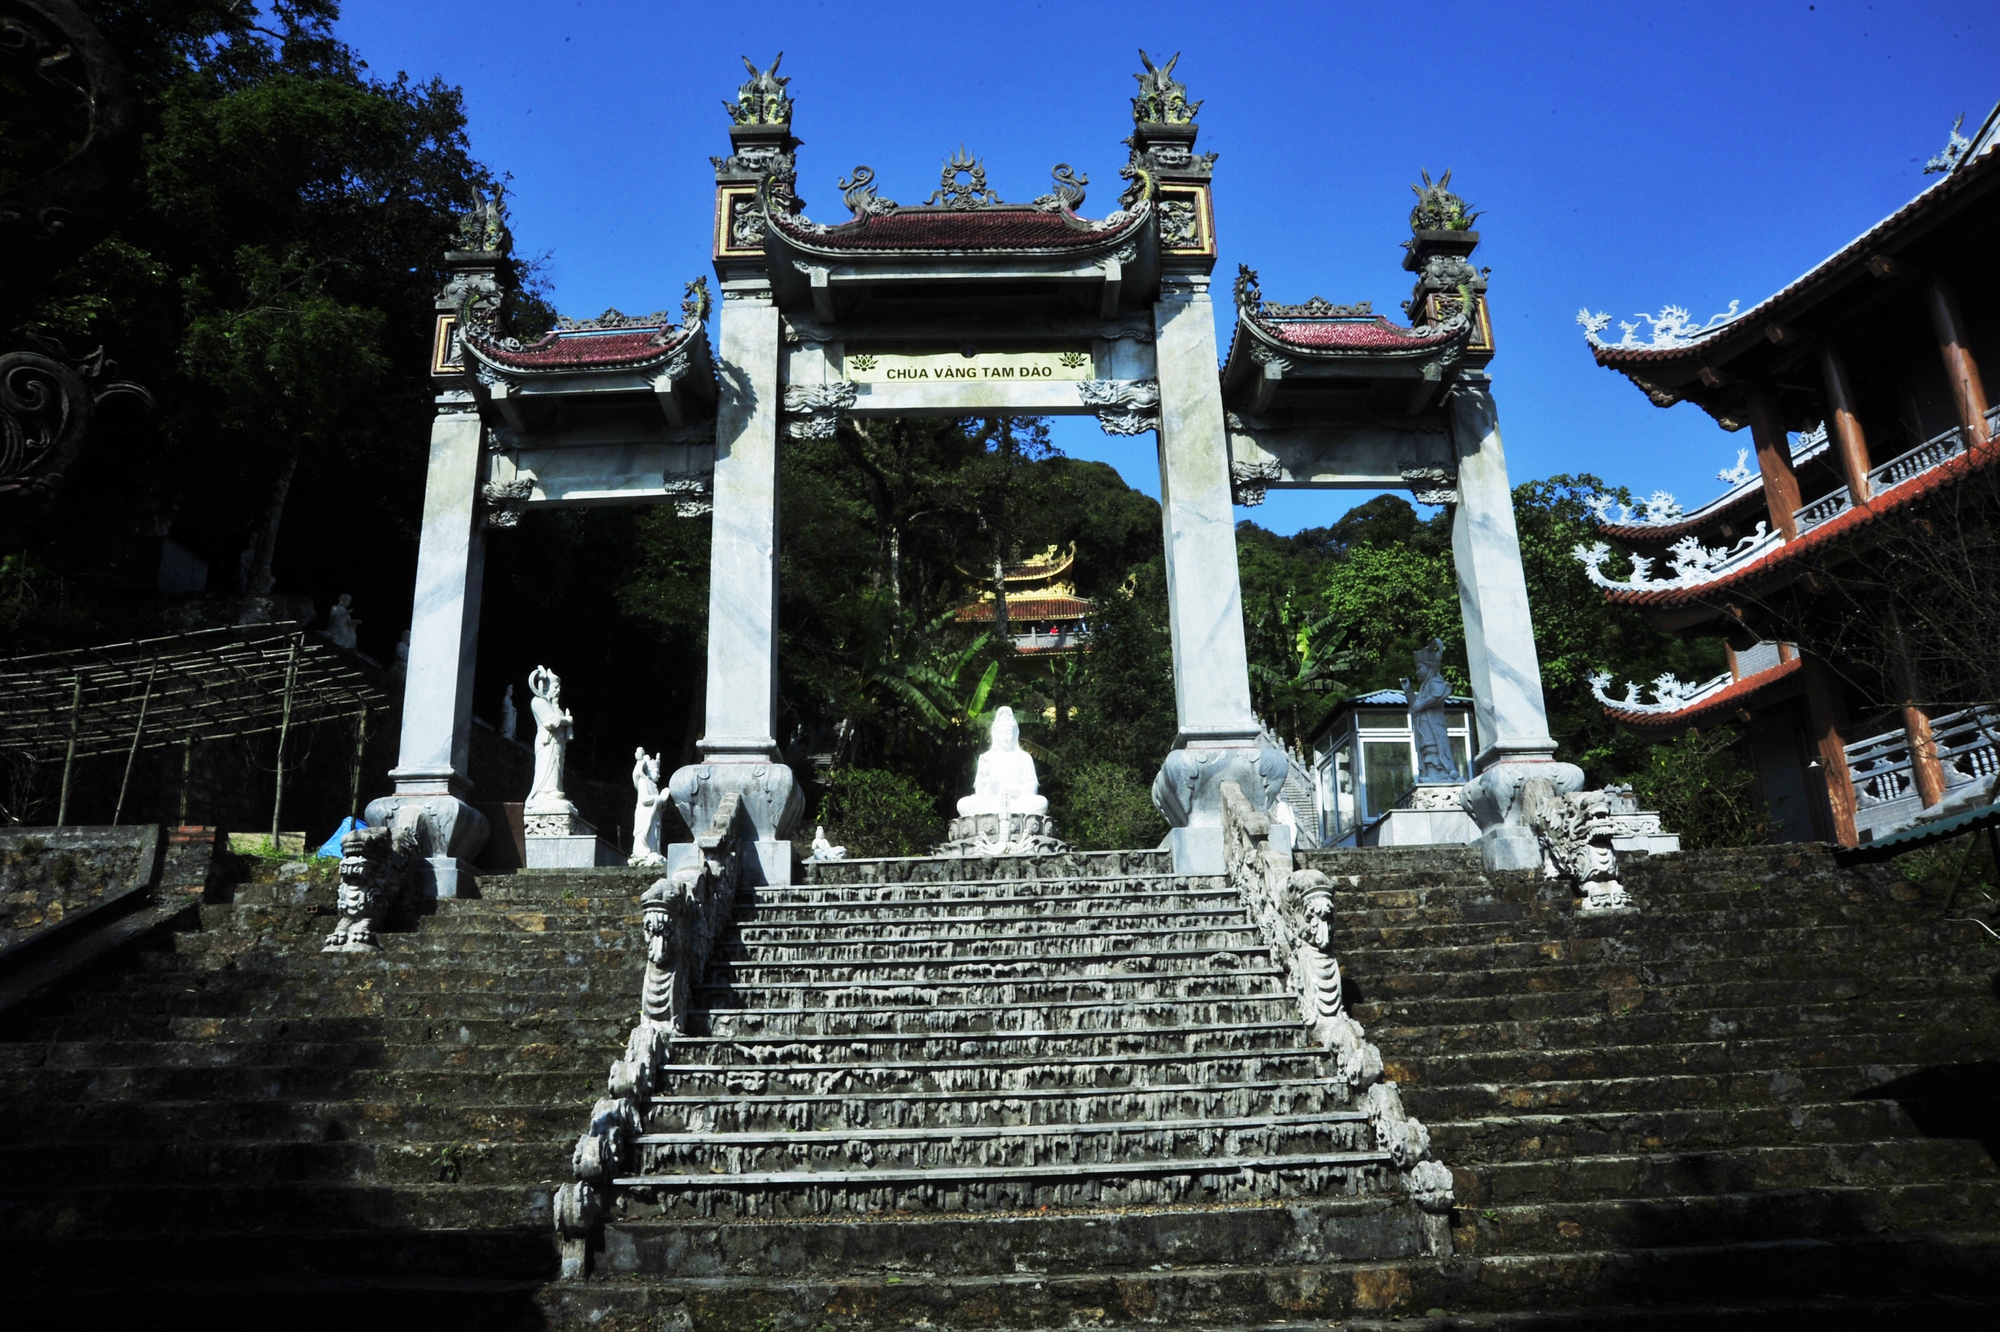 Đi qua cổng Tam Quan, bạn sẽ vào đến Chùa Vàng.